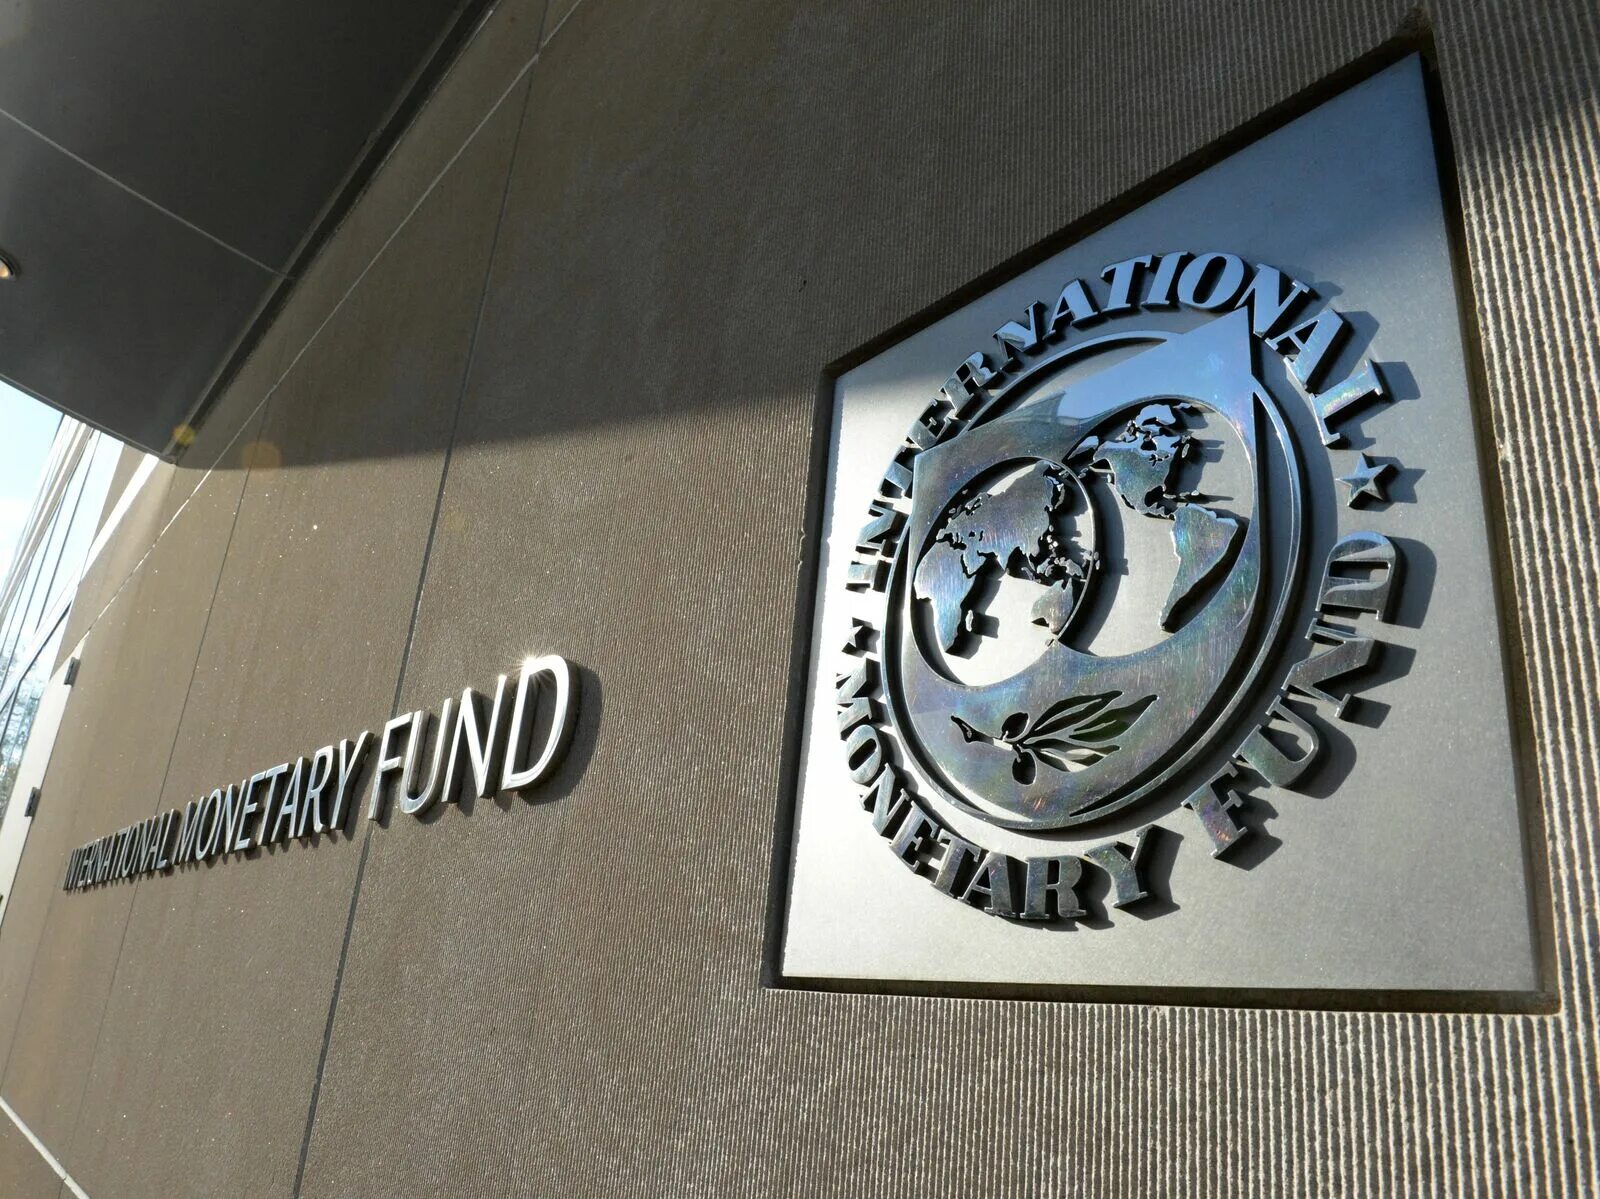 Международный фонд мвф. Международный валютный фонд (МВФ). Герб МВФ. Штаб квартира МВФ В Вашингтоне. Международный валютный фонд логотип.